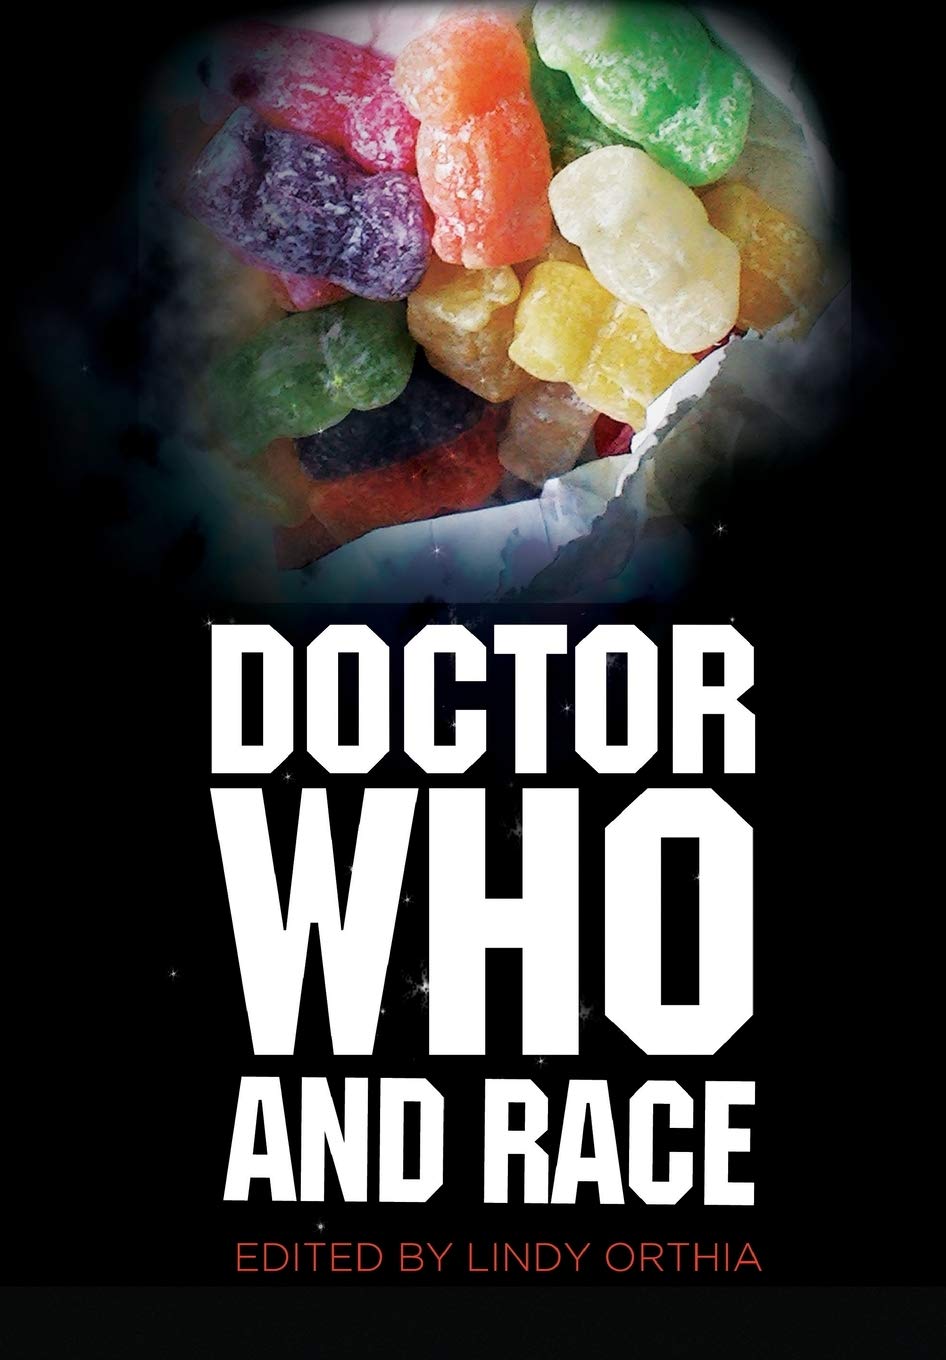 LIbri UK/US Orthia - Doctor Who And Race NUOVO SIGILLATO, EDIZIONE DEL 15/08/2013 SUBITO DISPONIBILE